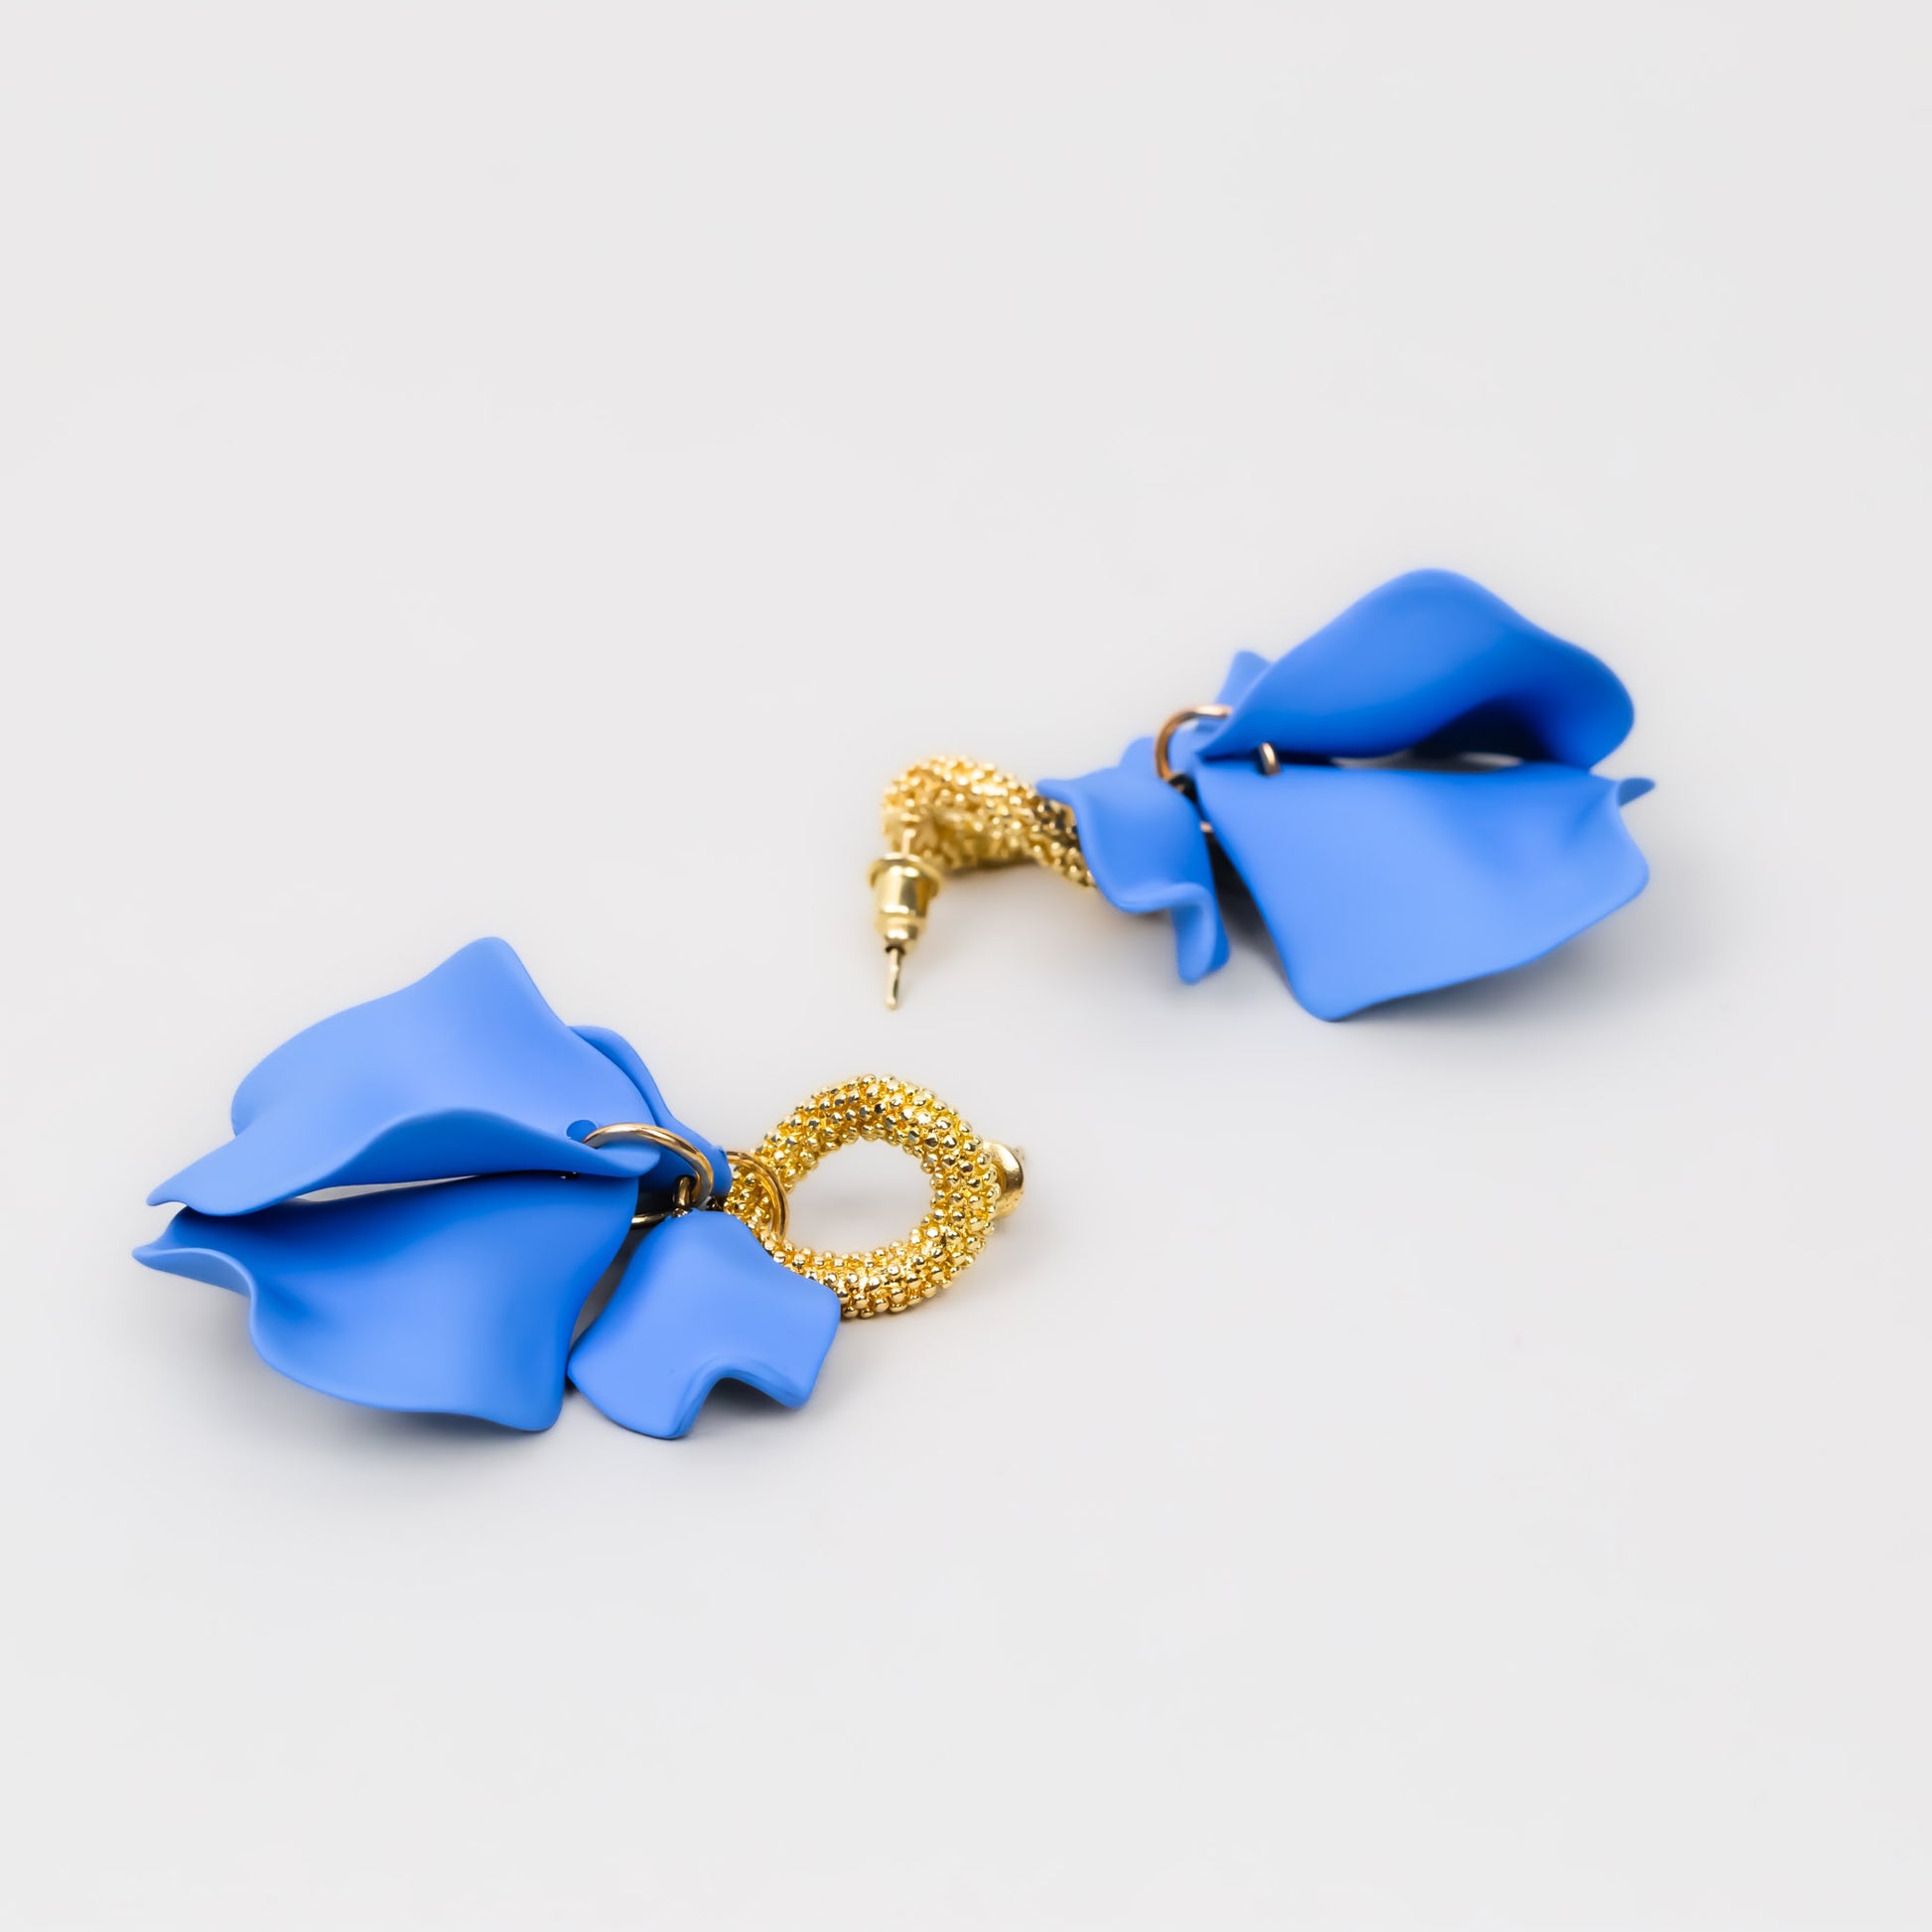 Cercei cu petale fine siliconate - Albastru, Auriu